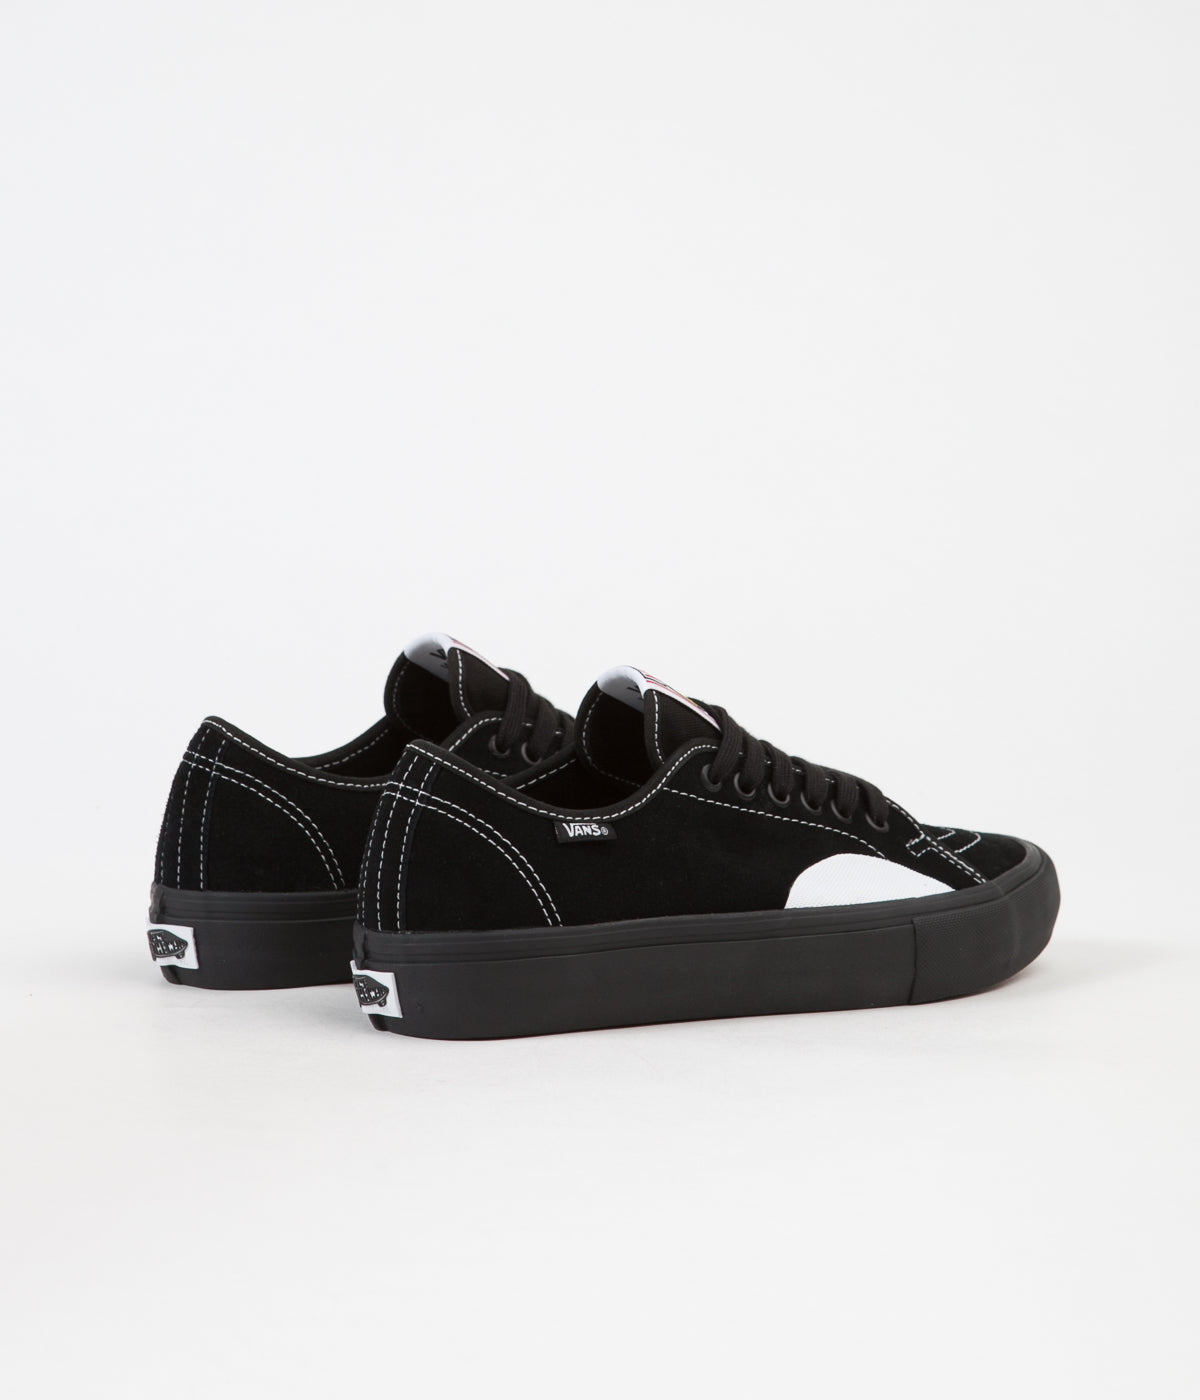 Vans AV Pro Shoes - / Black / White | Flatspot